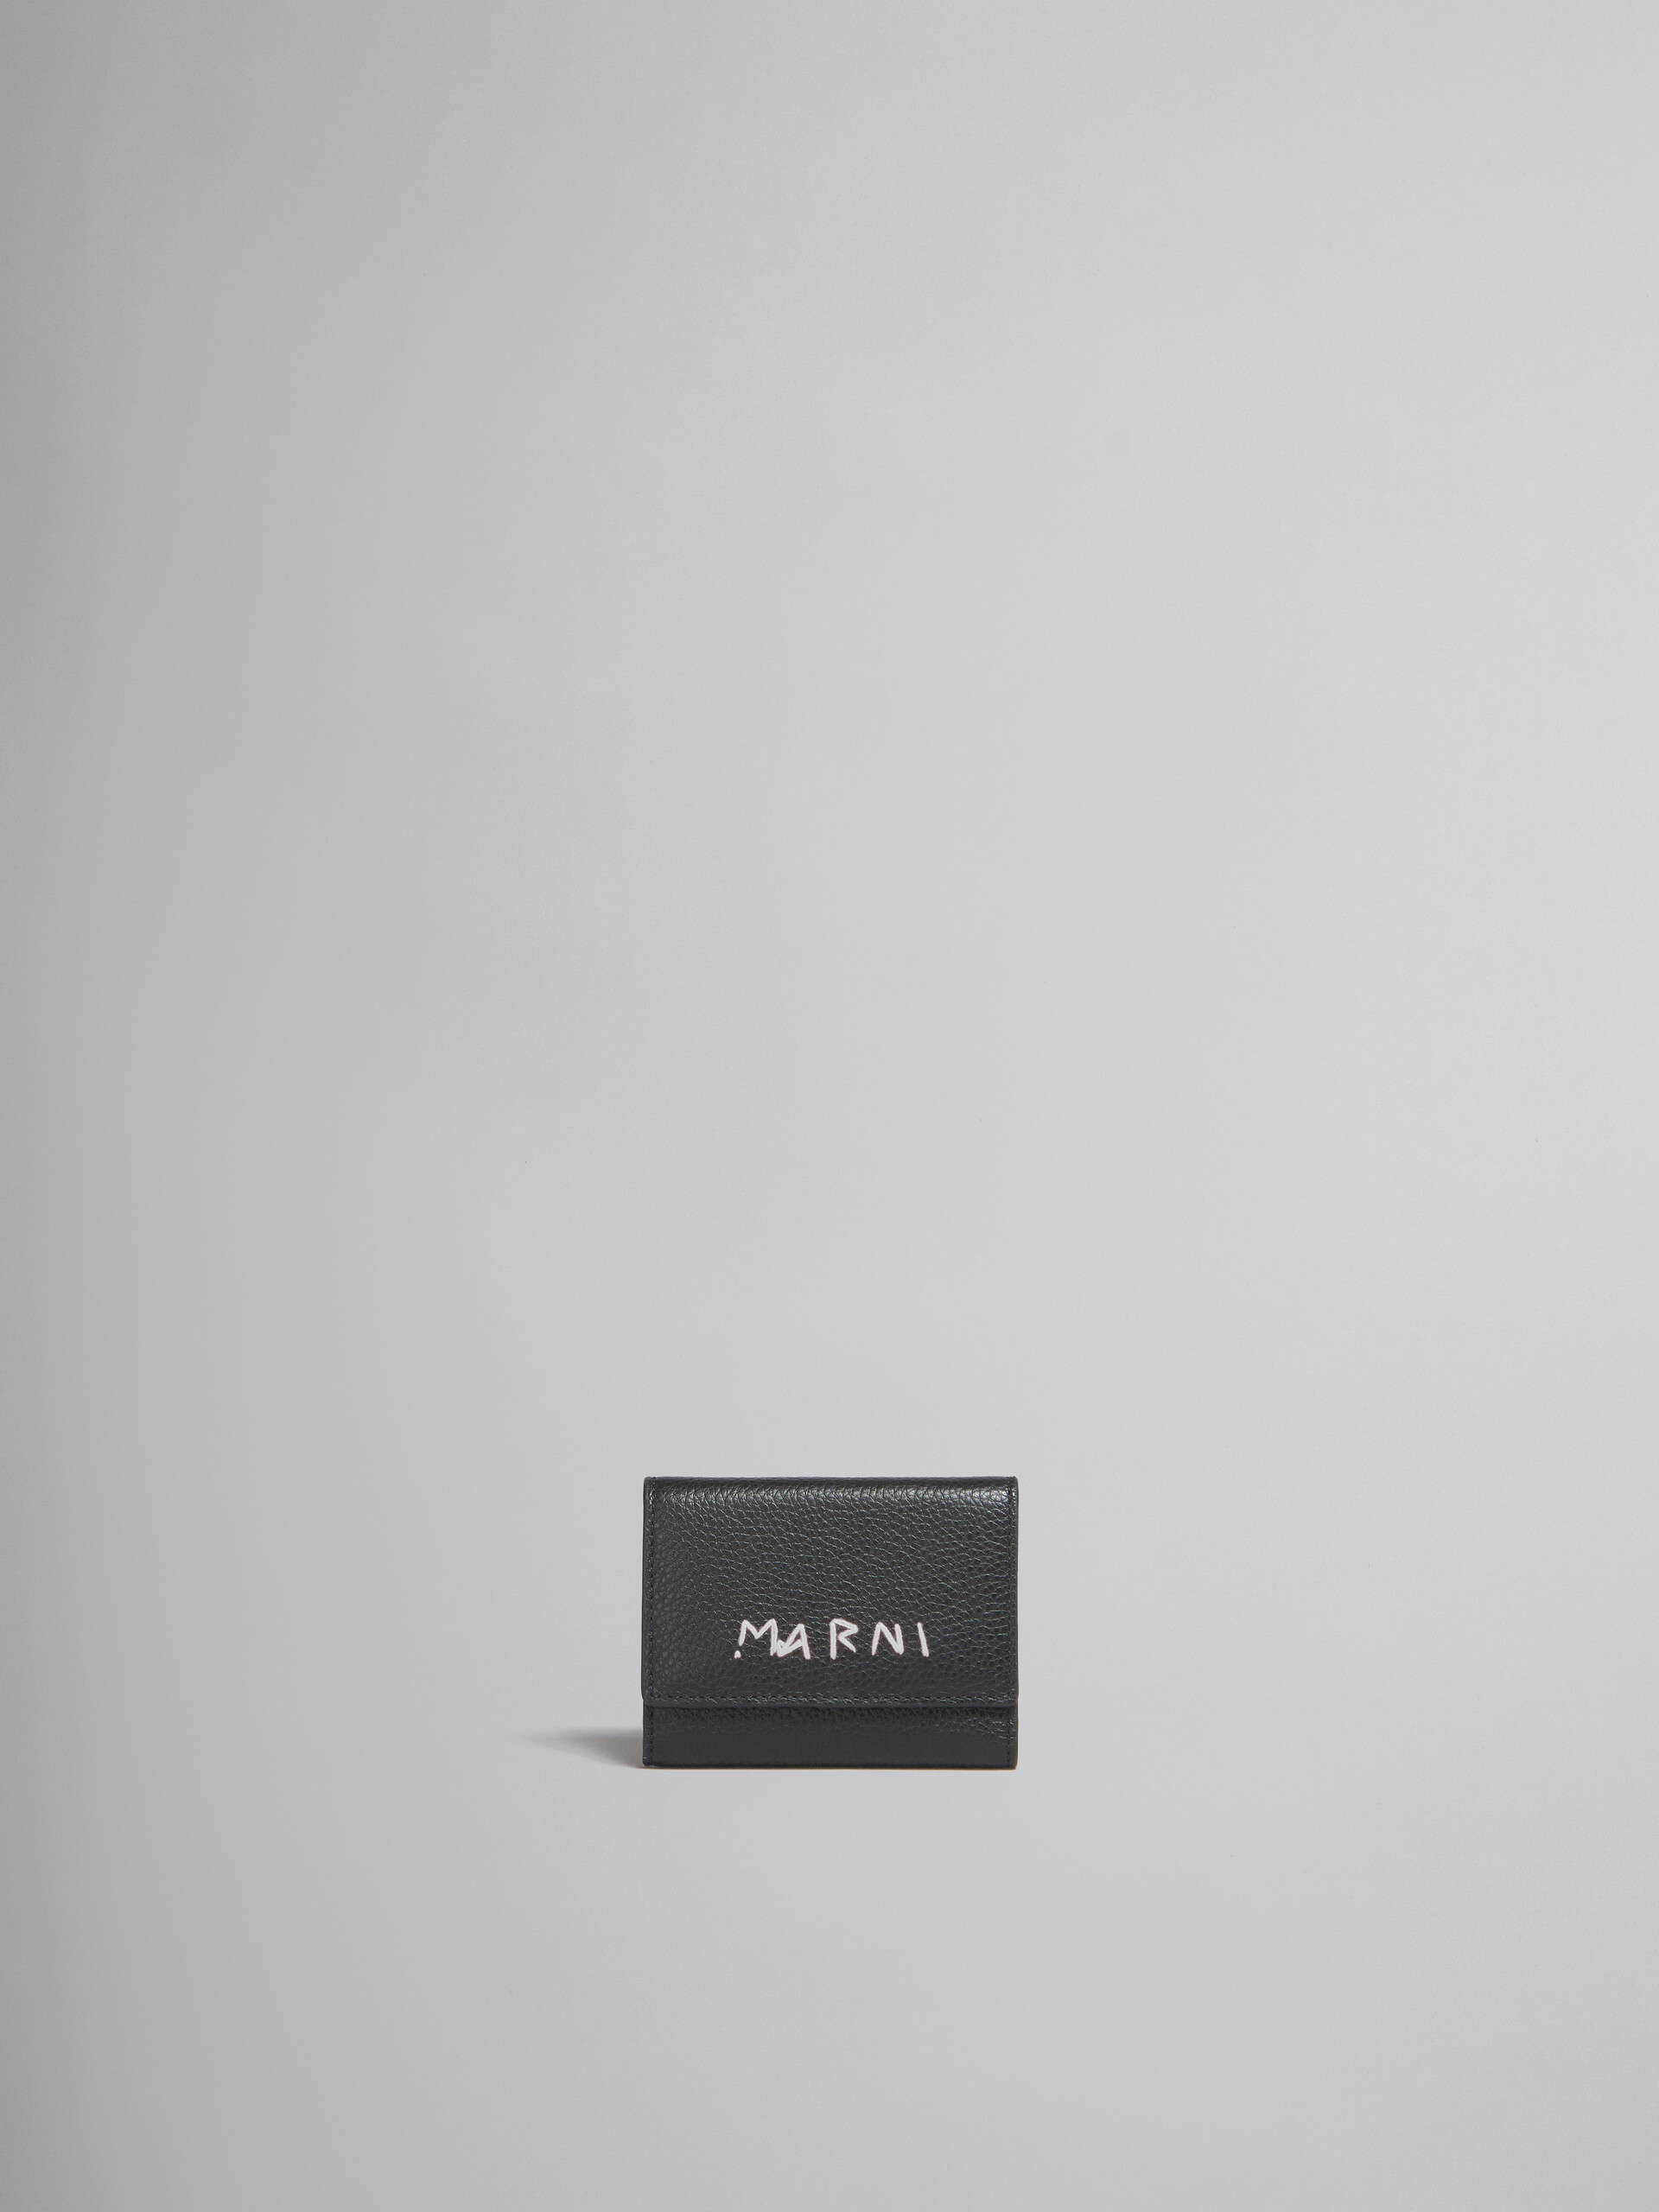 ブラック レザー製キーホルダー、マルニメンディング装飾 - キーホルダー - Image 1